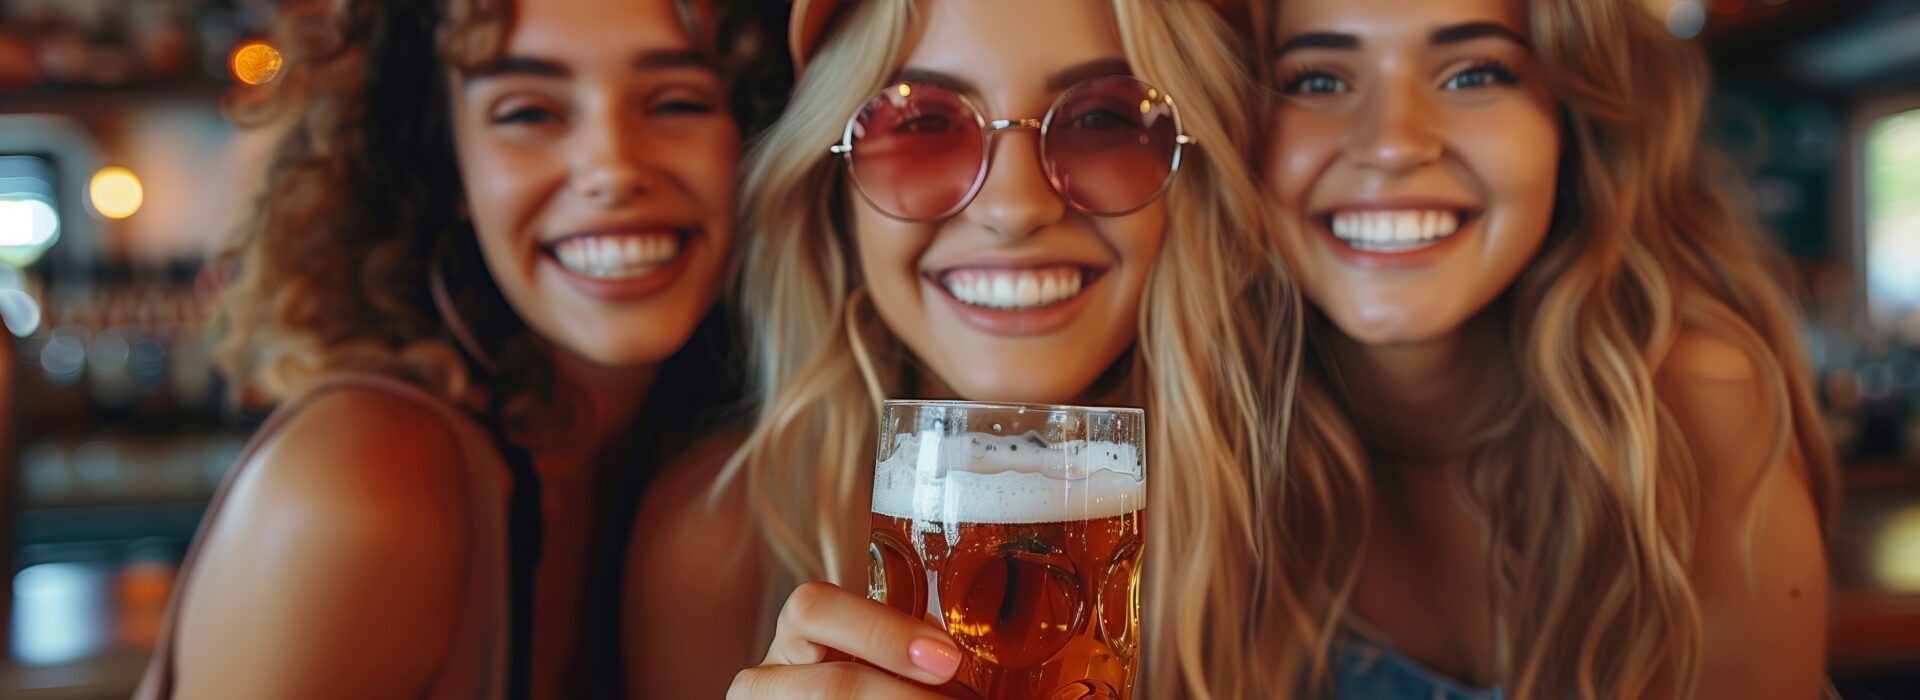 Drei fröhliche Freunde stoßen mit einem Glas Bier an in einer lebhaften Bar, unterstreichen die Freude am gemeinsamen Genießen eines kühlen Getränks